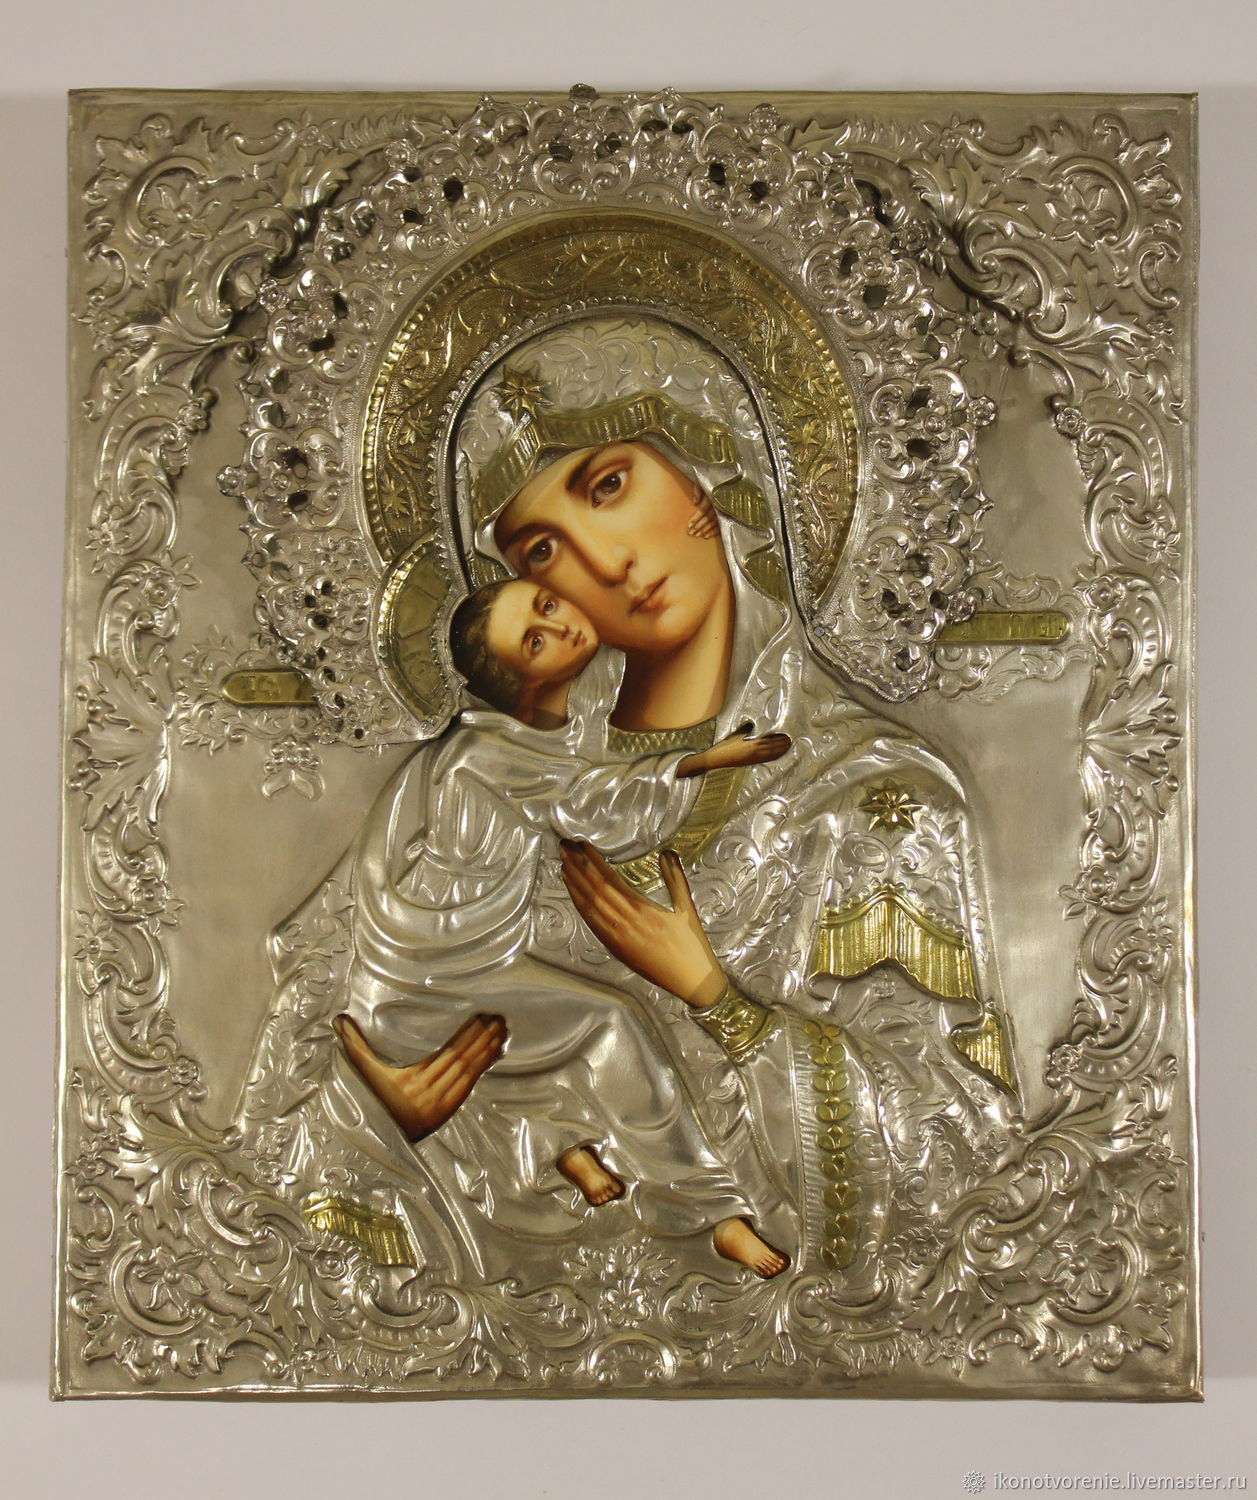 Владимирская икона божией матери оригинал фото в высоком качестве